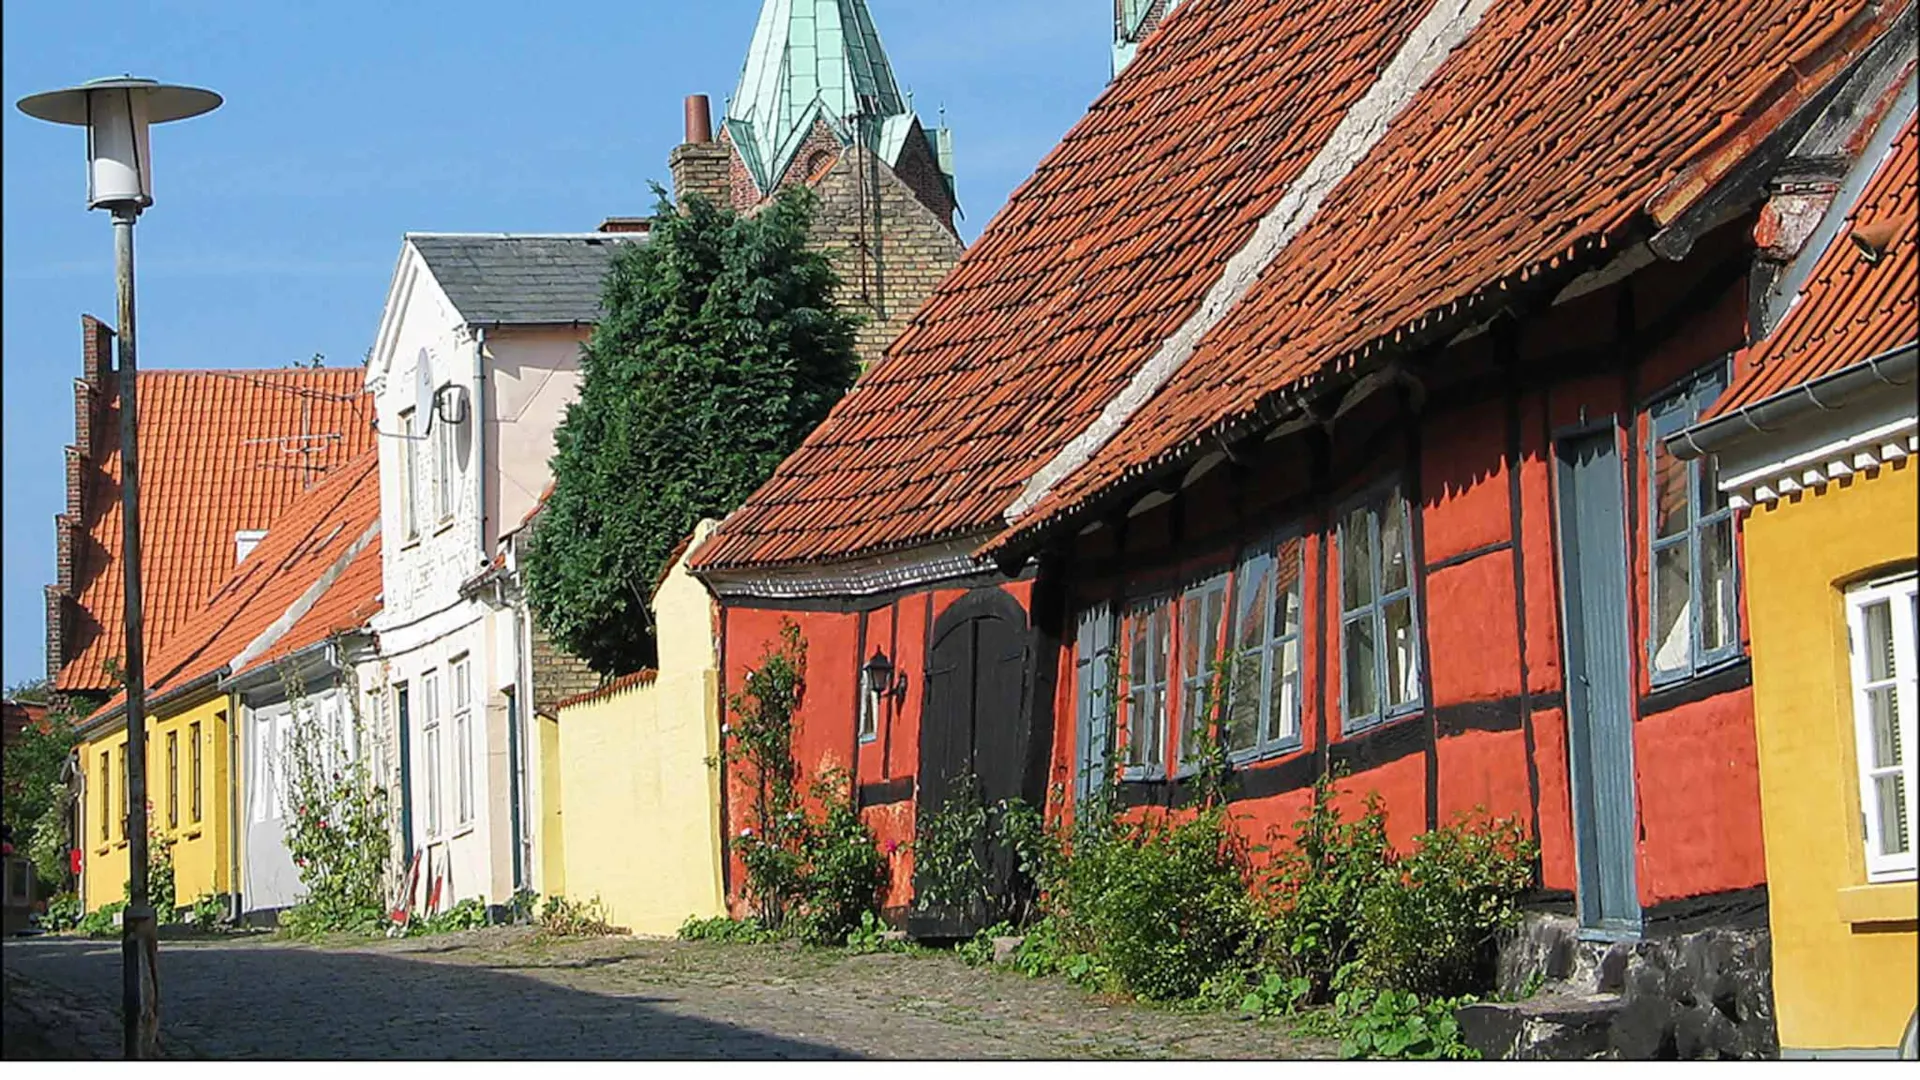 Besøg Højbyen i Kalundborg, og lad dig fange af det historiske vingesus. Byen har bygninger dateret helt tilbage til 1200-tallet og de næste århundrede frem.